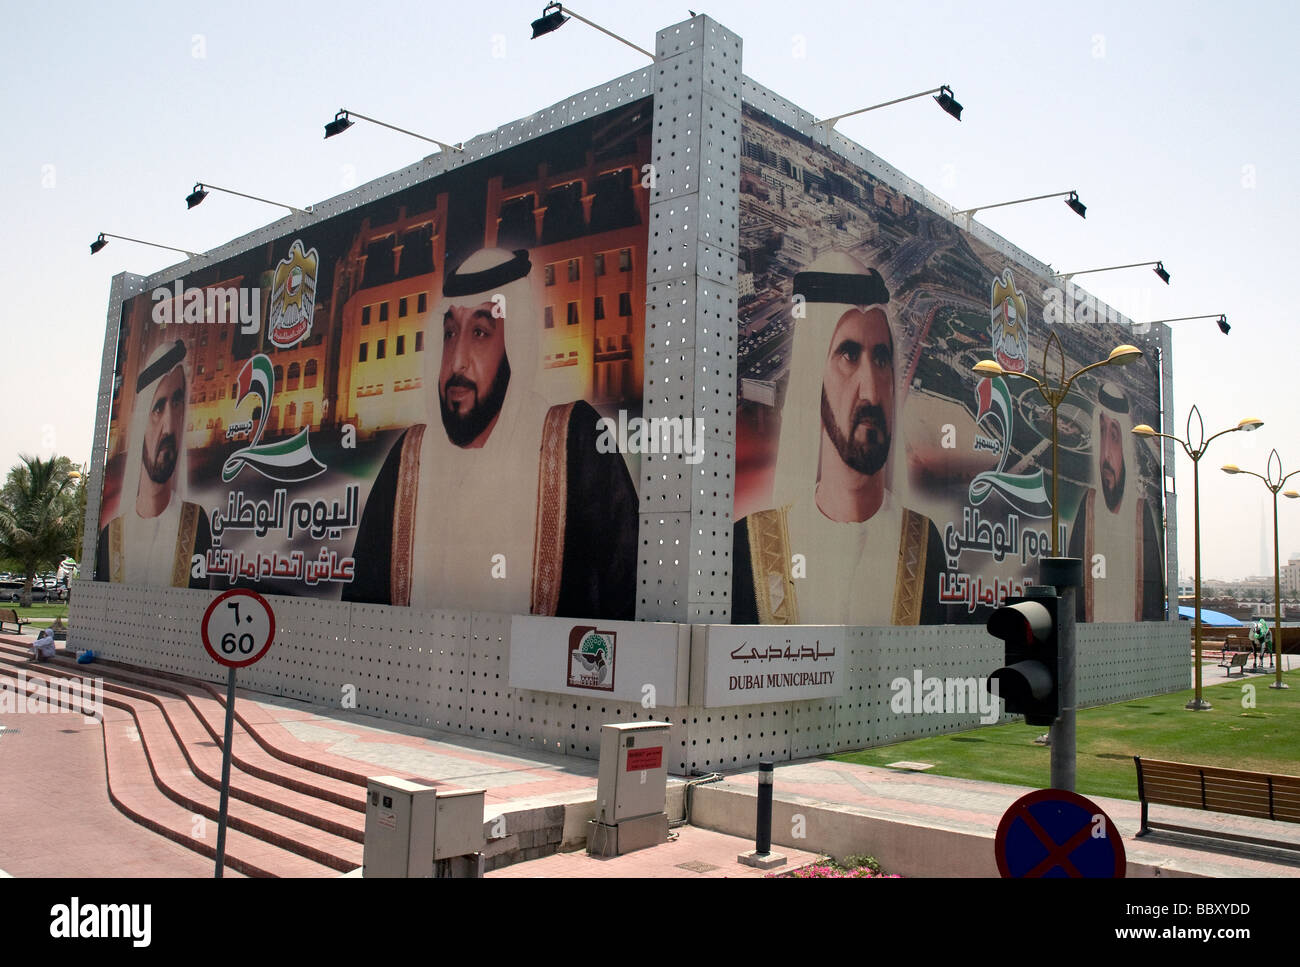 Dubai e la sua fiorente comune, come un cartellone proclama, sono dominate dalla sentenza al- Maktoum famiglia reale Foto Stock